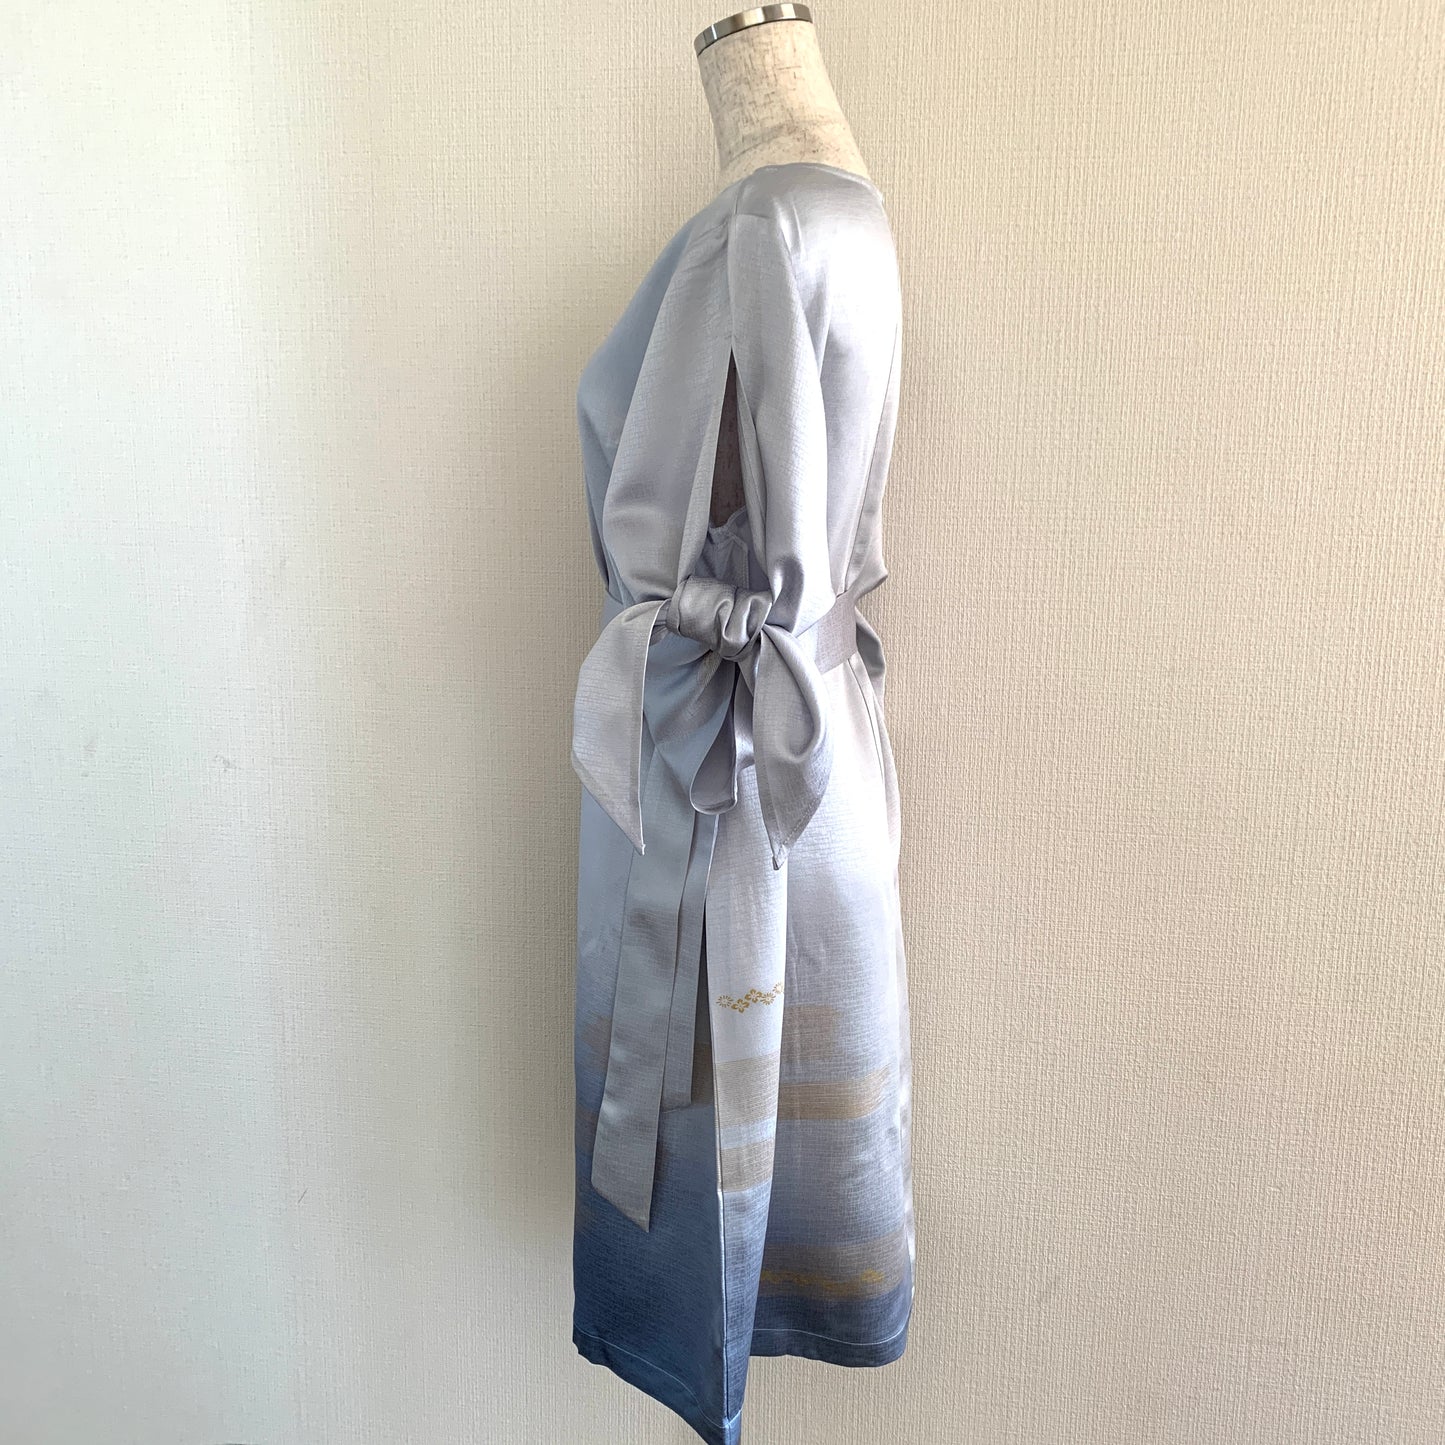 Kimono robe, komon 小紋, fabriquée à la main, recyclée #pre14